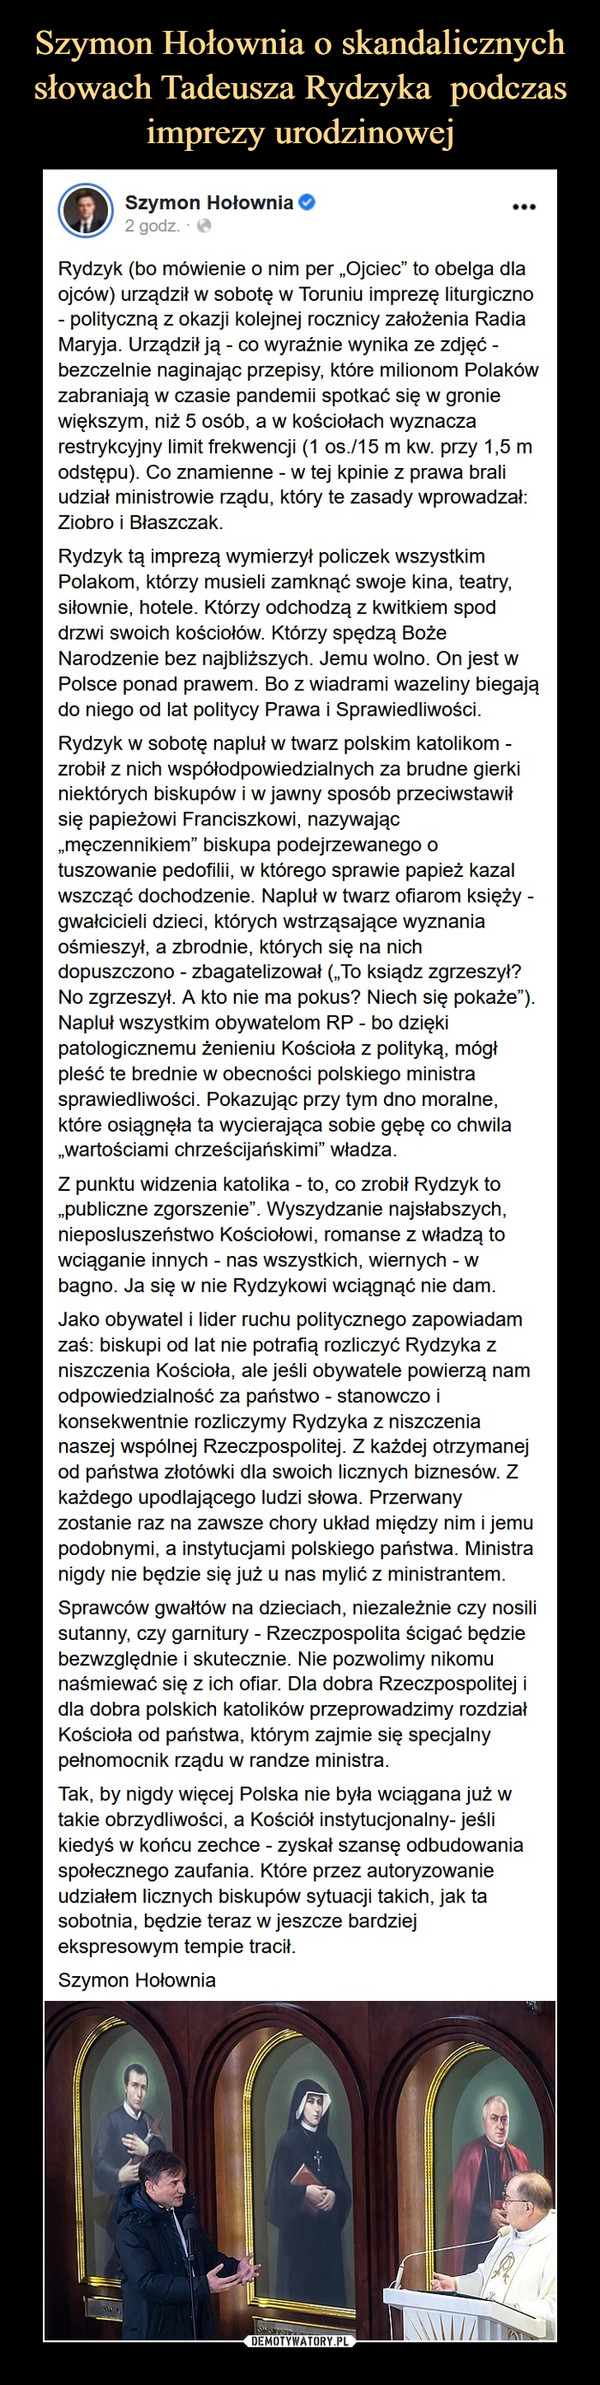  –  Szymon Hołownia 2tlhoSponsorertd  ·Rydzyk (bo mówienie o nim per „Ojciec” to obelga dla ojców) urządził w sobotę w Toruniu imprezę liturgiczno - polityczną z okazji kolejnej rocznicy założenia Radia Maryja. Urządził ją - co wyraźnie wynika ze zdjęć - bezczelnie naginając przepisy, które milionom Polaków zabraniają w czasie pandemii spotkać się w gronie większym, niż 5 osób, a w kościołach wyznacza restrykcyjny limit frekwencji (1 os./15 m kw. przy 1,5 m odstępu). Co znamienne - w tej kpinie z prawa brali udział ministrowie rządu, który te zasady wprowadzał: Ziobro i Błaszczak. Rydzyk tą imprezą wymierzył policzek wszystkim Polakom, którzy musieli zamknąć swoje kina, teatry, siłownie, hotele. Którzy odchodzą z kwitkiem spod drzwi swoich kościołów. Którzy spędzą Boże Narodzenie bez najbliższych. Jemu wolno. On jest w Polsce ponad prawem. Bo z wiadrami wazeliny biegają do niego od lat politycy Prawa i Sprawiedliwości. Rydzyk w sobotę napluł w twarz polskim katolikom - zrobił z nich współodpowiedzialnych za brudne gierki niektórych biskupów i w jawny sposób przeciwstawił się papieżowi Franciszkowi, nazywając „męczennikiem” biskupa podejrzewanego o tuszowanie pedofilii, w którego sprawie papież kazal wszcząć dochodzenie. Napluł w twarz ofiarom księży - gwałcicieli dzieci, których wstrząsające wyznania ośmieszył, a zbrodnie, których się na nich dopuszczono - zbagatelizował („To ksiądz zgrzeszył? No zgrzeszył. A kto nie ma pokus? Niech się pokaże”). Napluł wszystkim obywatelom RP - bo dzięki patologicznemu żenieniu Kościoła z polityką, mógł pleść te brednie w obecności polskiego ministra sprawiedliwości. Pokazując przy tym dno moralne, które osiągnęła ta wycierająca sobie gębę co chwila „wartościami chrześcijańskimi” władza. Z punktu widzenia katolika - to, co zrobił Rydzyk to „publiczne zgorszenie”. Wyszydzanie najsłabszych, nieposluszeństwo Kościołowi, romanse z władzą to wciąganie innych - nas wszystkich, wiernych - w bagno. Ja się w nie Rydzykowi wciągnąć nie dam. Jako obywatel i lider ruchu politycznego zapowiadam zaś: biskupi od lat nie potrafią rozliczyć Rydzyka z niszczenia Kościoła, ale jeśli obywatele powierzą nam odpowiedzialność za państwo - stanowczo i konsekwentnie rozliczymy Rydzyka z niszczenia naszej wspólnej Rzeczpospolitej. Z każdej otrzymanej od państwa złotówki dla swoich licznych biznesów. Z każdego upodlającego ludzi słowa. Przerwany zostanie raz na zawsze chory układ między nim i jemu podobnymi, a instytucjami polskiego państwa. Ministra nigdy nie będzie się już u nas mylić z ministrantem. Sprawców gwałtów na dzieciach, niezależnie czy nosili sutanny, czy garnitury - Rzeczpospolita ścigać będzie bezwzględnie i skutecznie. Nie pozwolimy nikomu naśmiewać się z ich ofiar. Dla dobra Rzeczpospolitej i dla dobra polskich katolików przeprowadzimy rozdział Kościoła od państwa, którym zajmie się specjalny pełnomocnik rządu w randze ministra. Tak, by nigdy więcej Polska nie była wciągana już w takie obrzydliwości, a Kościół instytucjonalny- jeśli kiedyś w końcu zechce - zyskał szansę odbudowania społecznego zaufania. Które przez autoryzowanie udziałem licznych biskupów sytuacji takich, jak ta sobotnia, będzie teraz w jeszcze bardziej ekspresowym tempie tracił. Szymon Hołownia